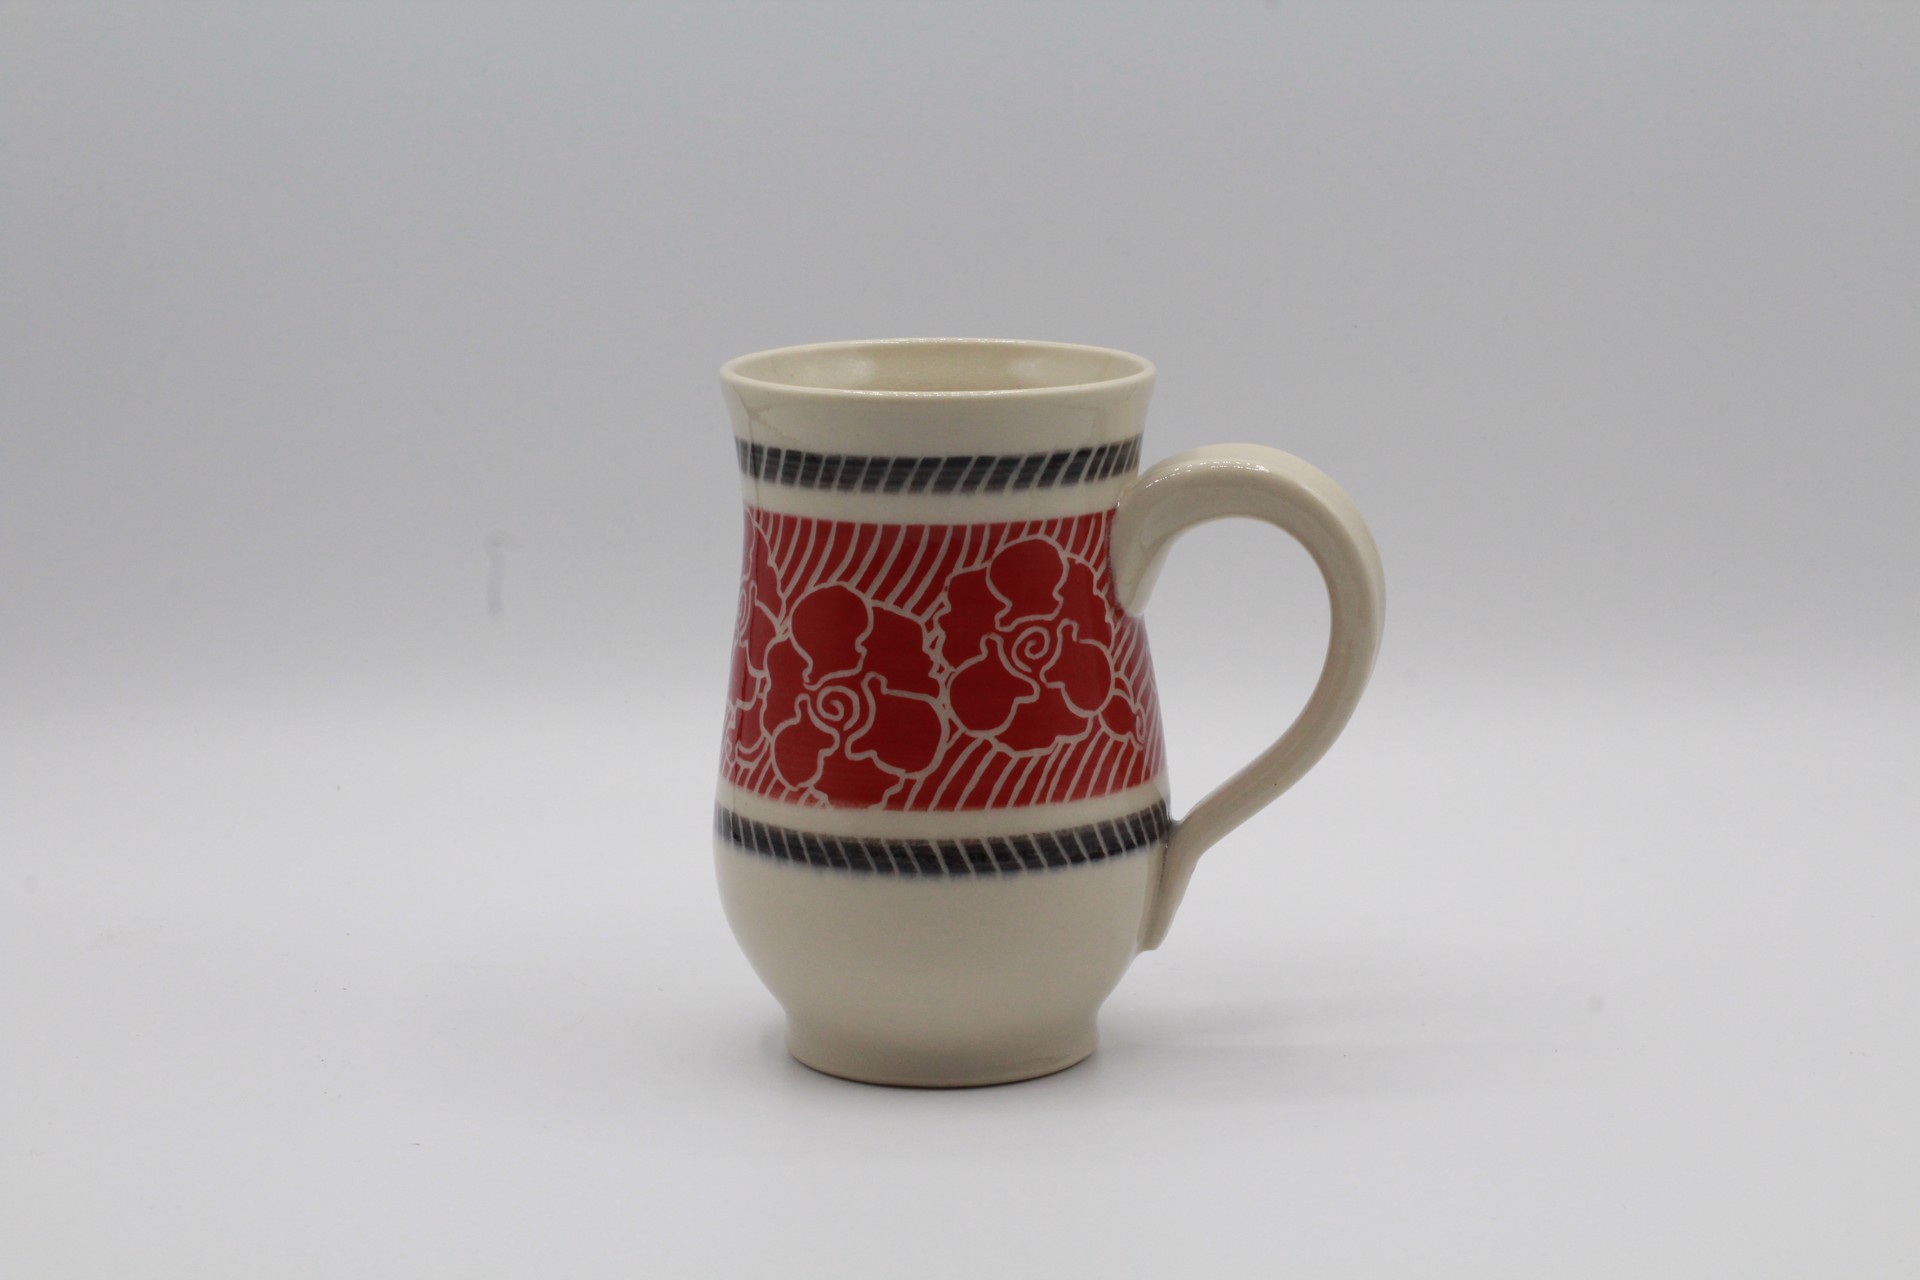 Red Rose Medium Mug by Kelly Price